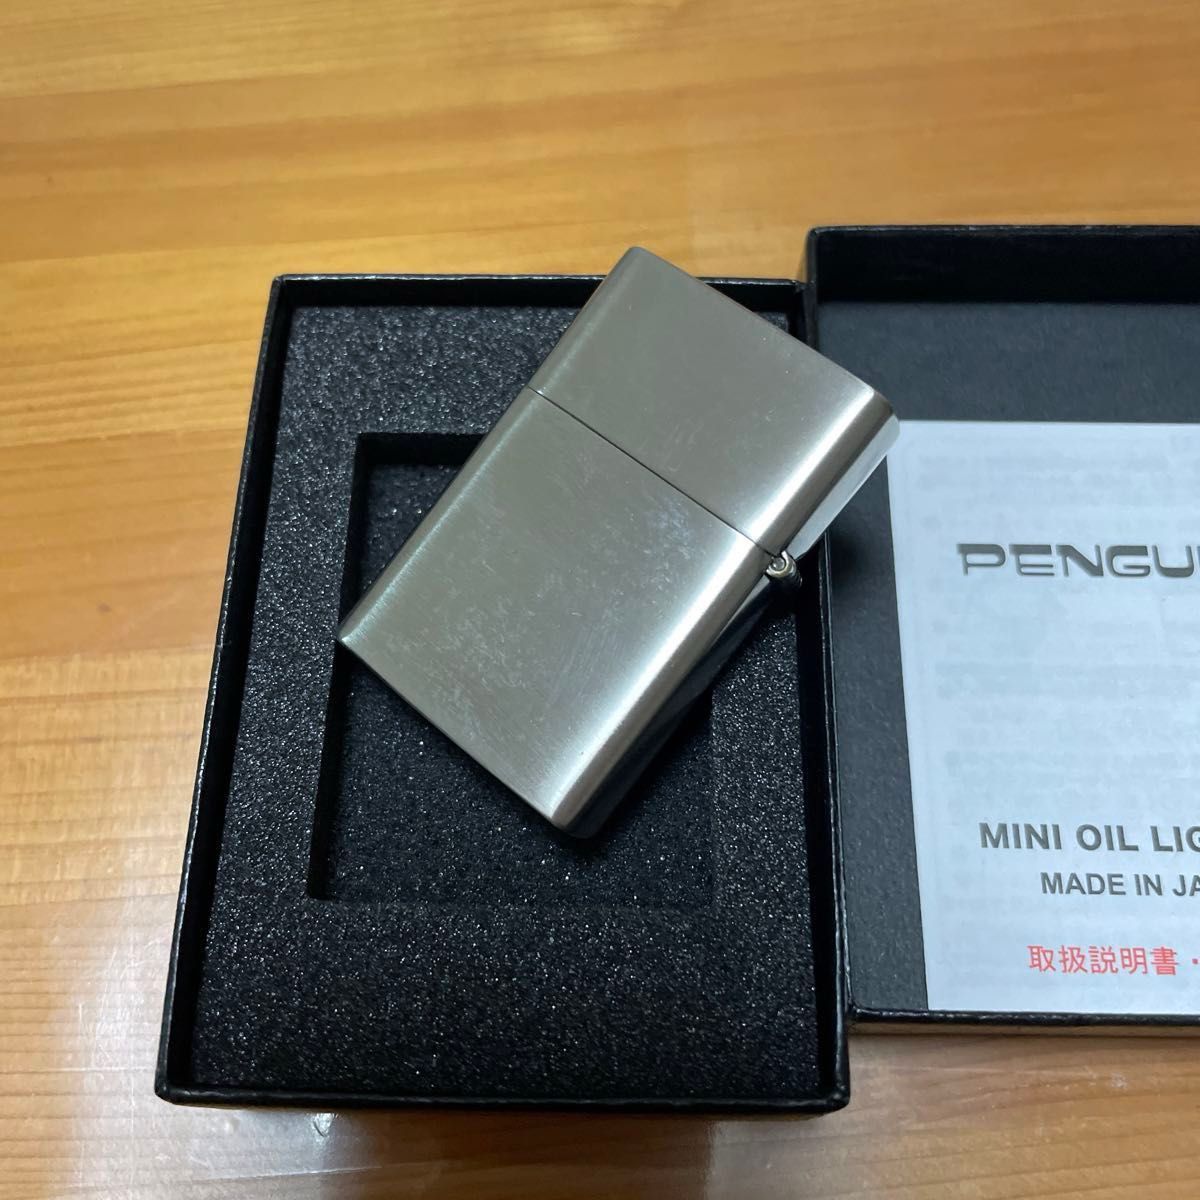 【渋谷ロフト発】PENGUIN MADE IN JAPAN OIL LIGHTER ペンギンオイルライター